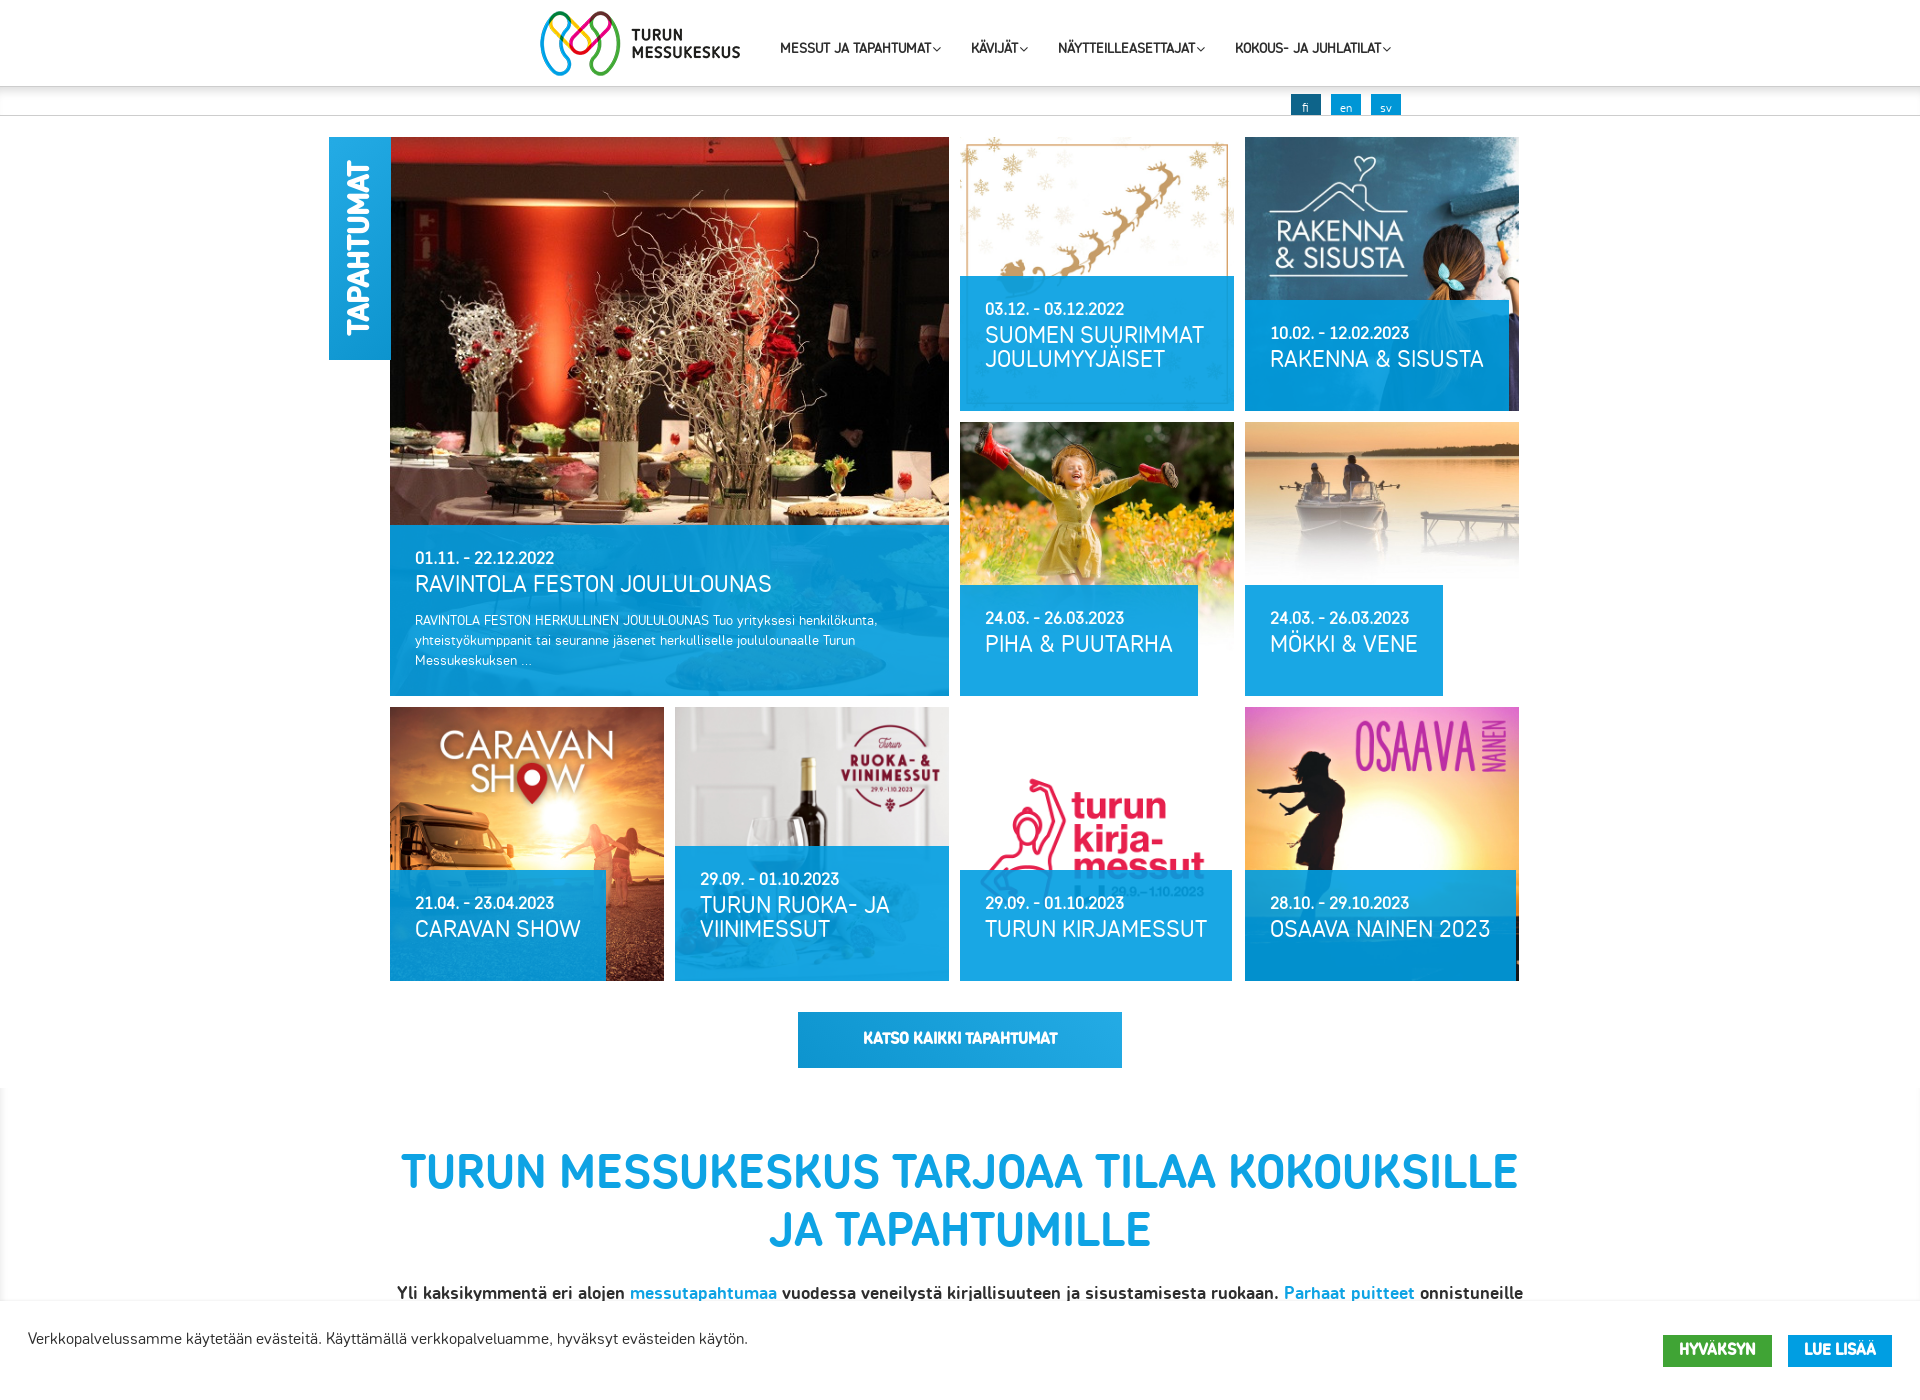 Skärmdump för kongressikeskus.fi